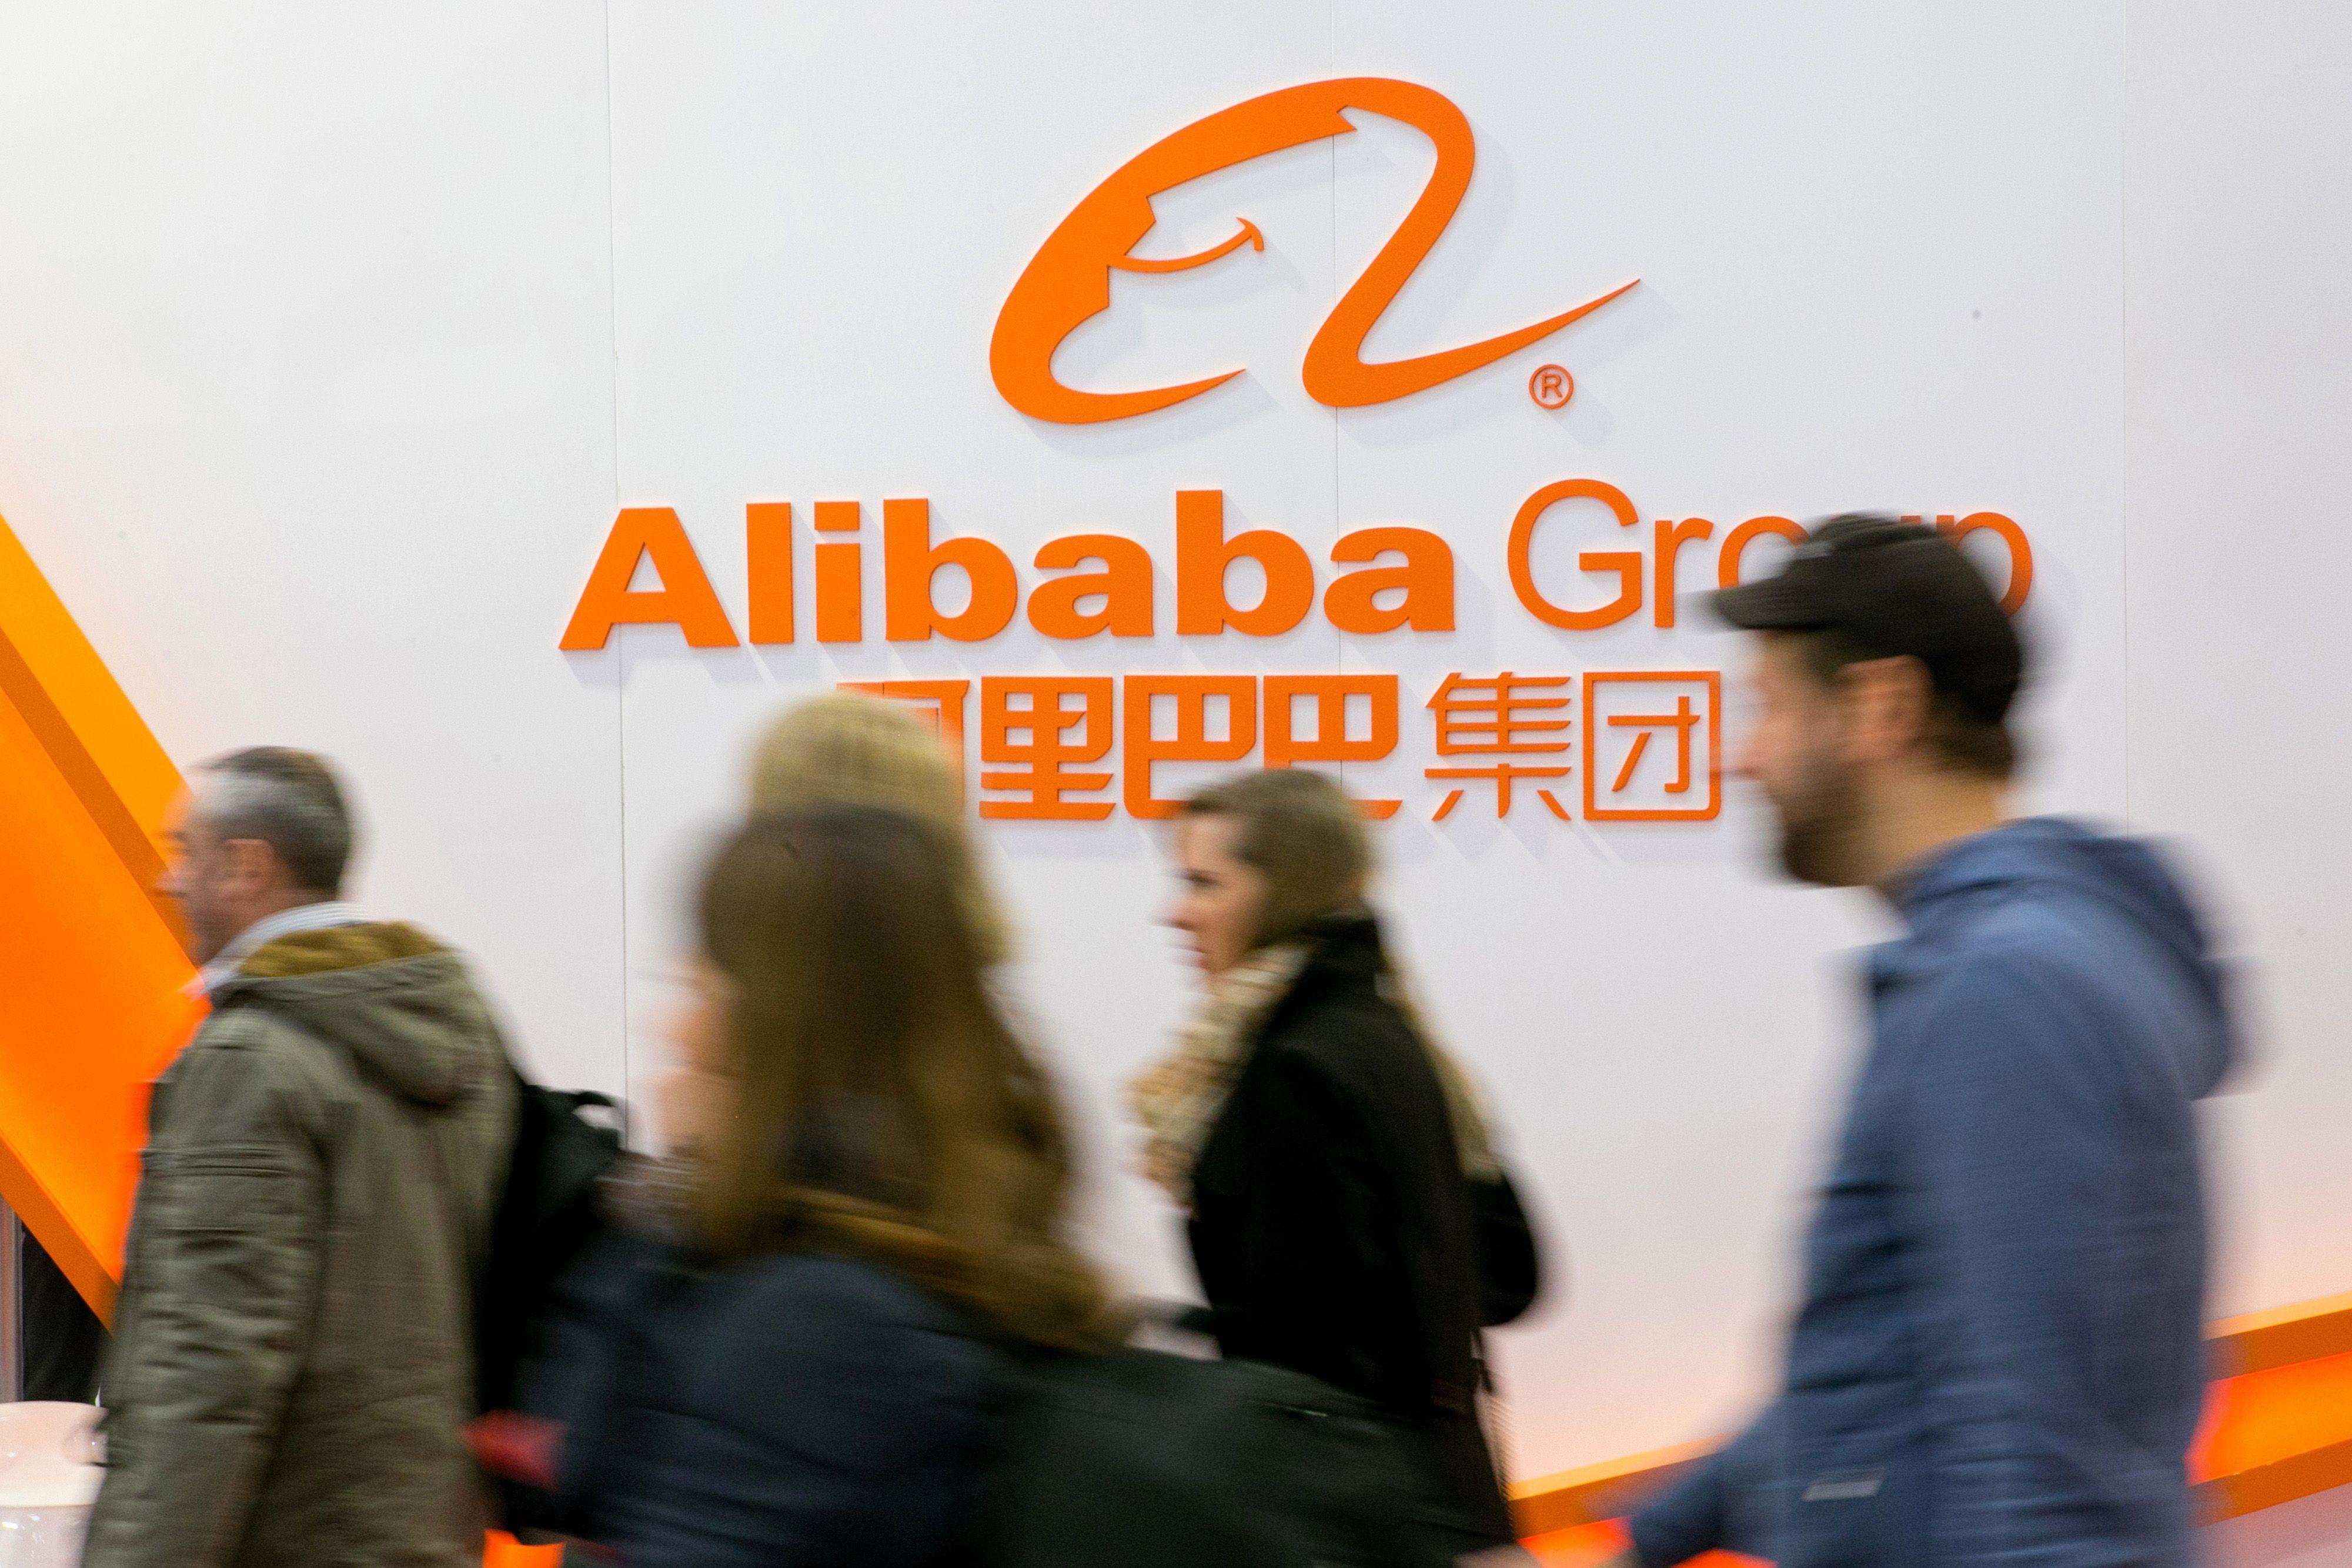 Koubei Holding Logo - Alibaba's Koubei said to seek US$1b to help fund expansion, Consumer